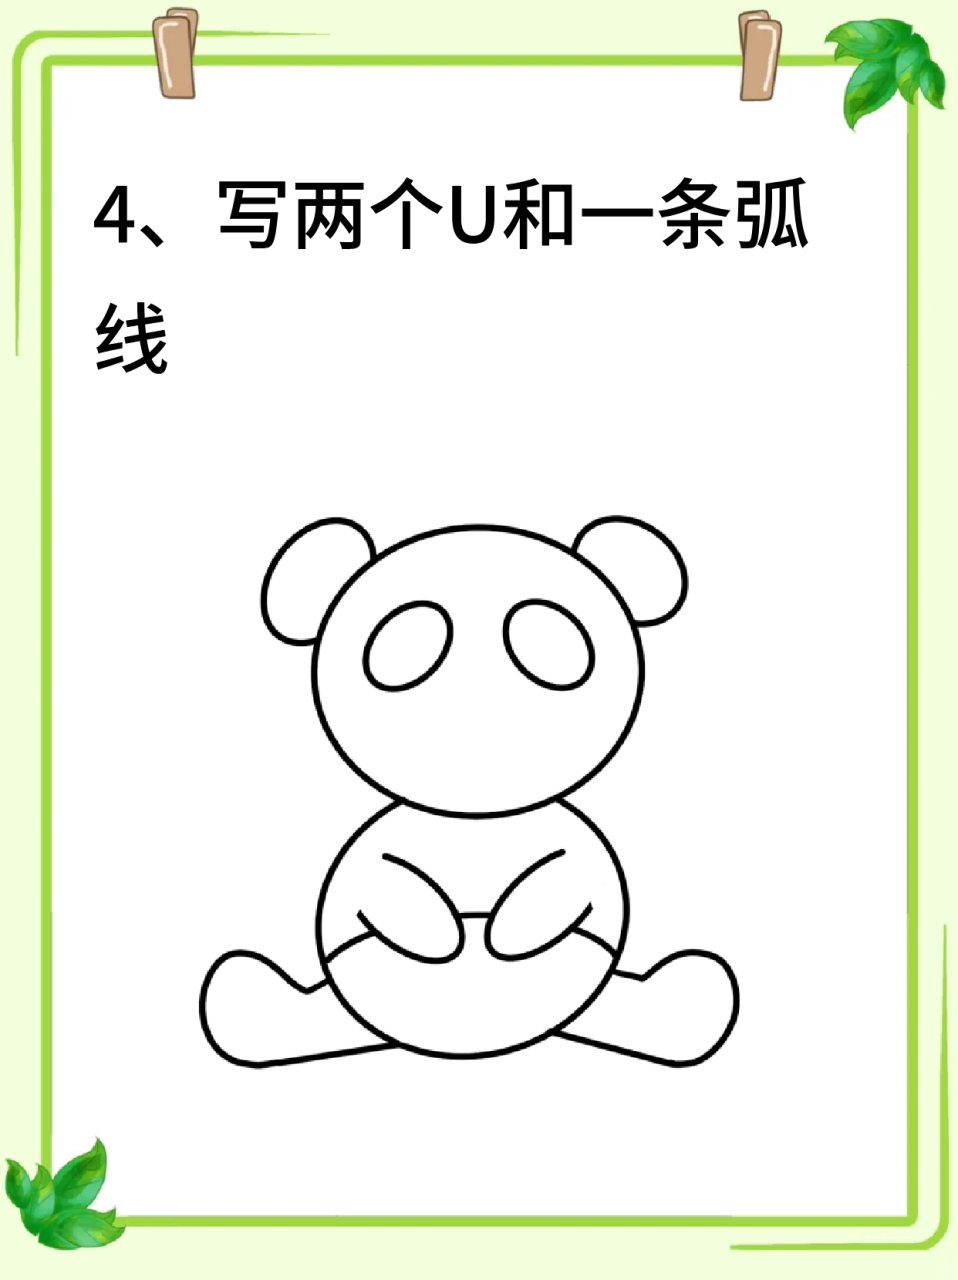 熊猫的简笔画 09吃竹子的大熊猫真的好可爱呀,92熊猫能有什么烦恼